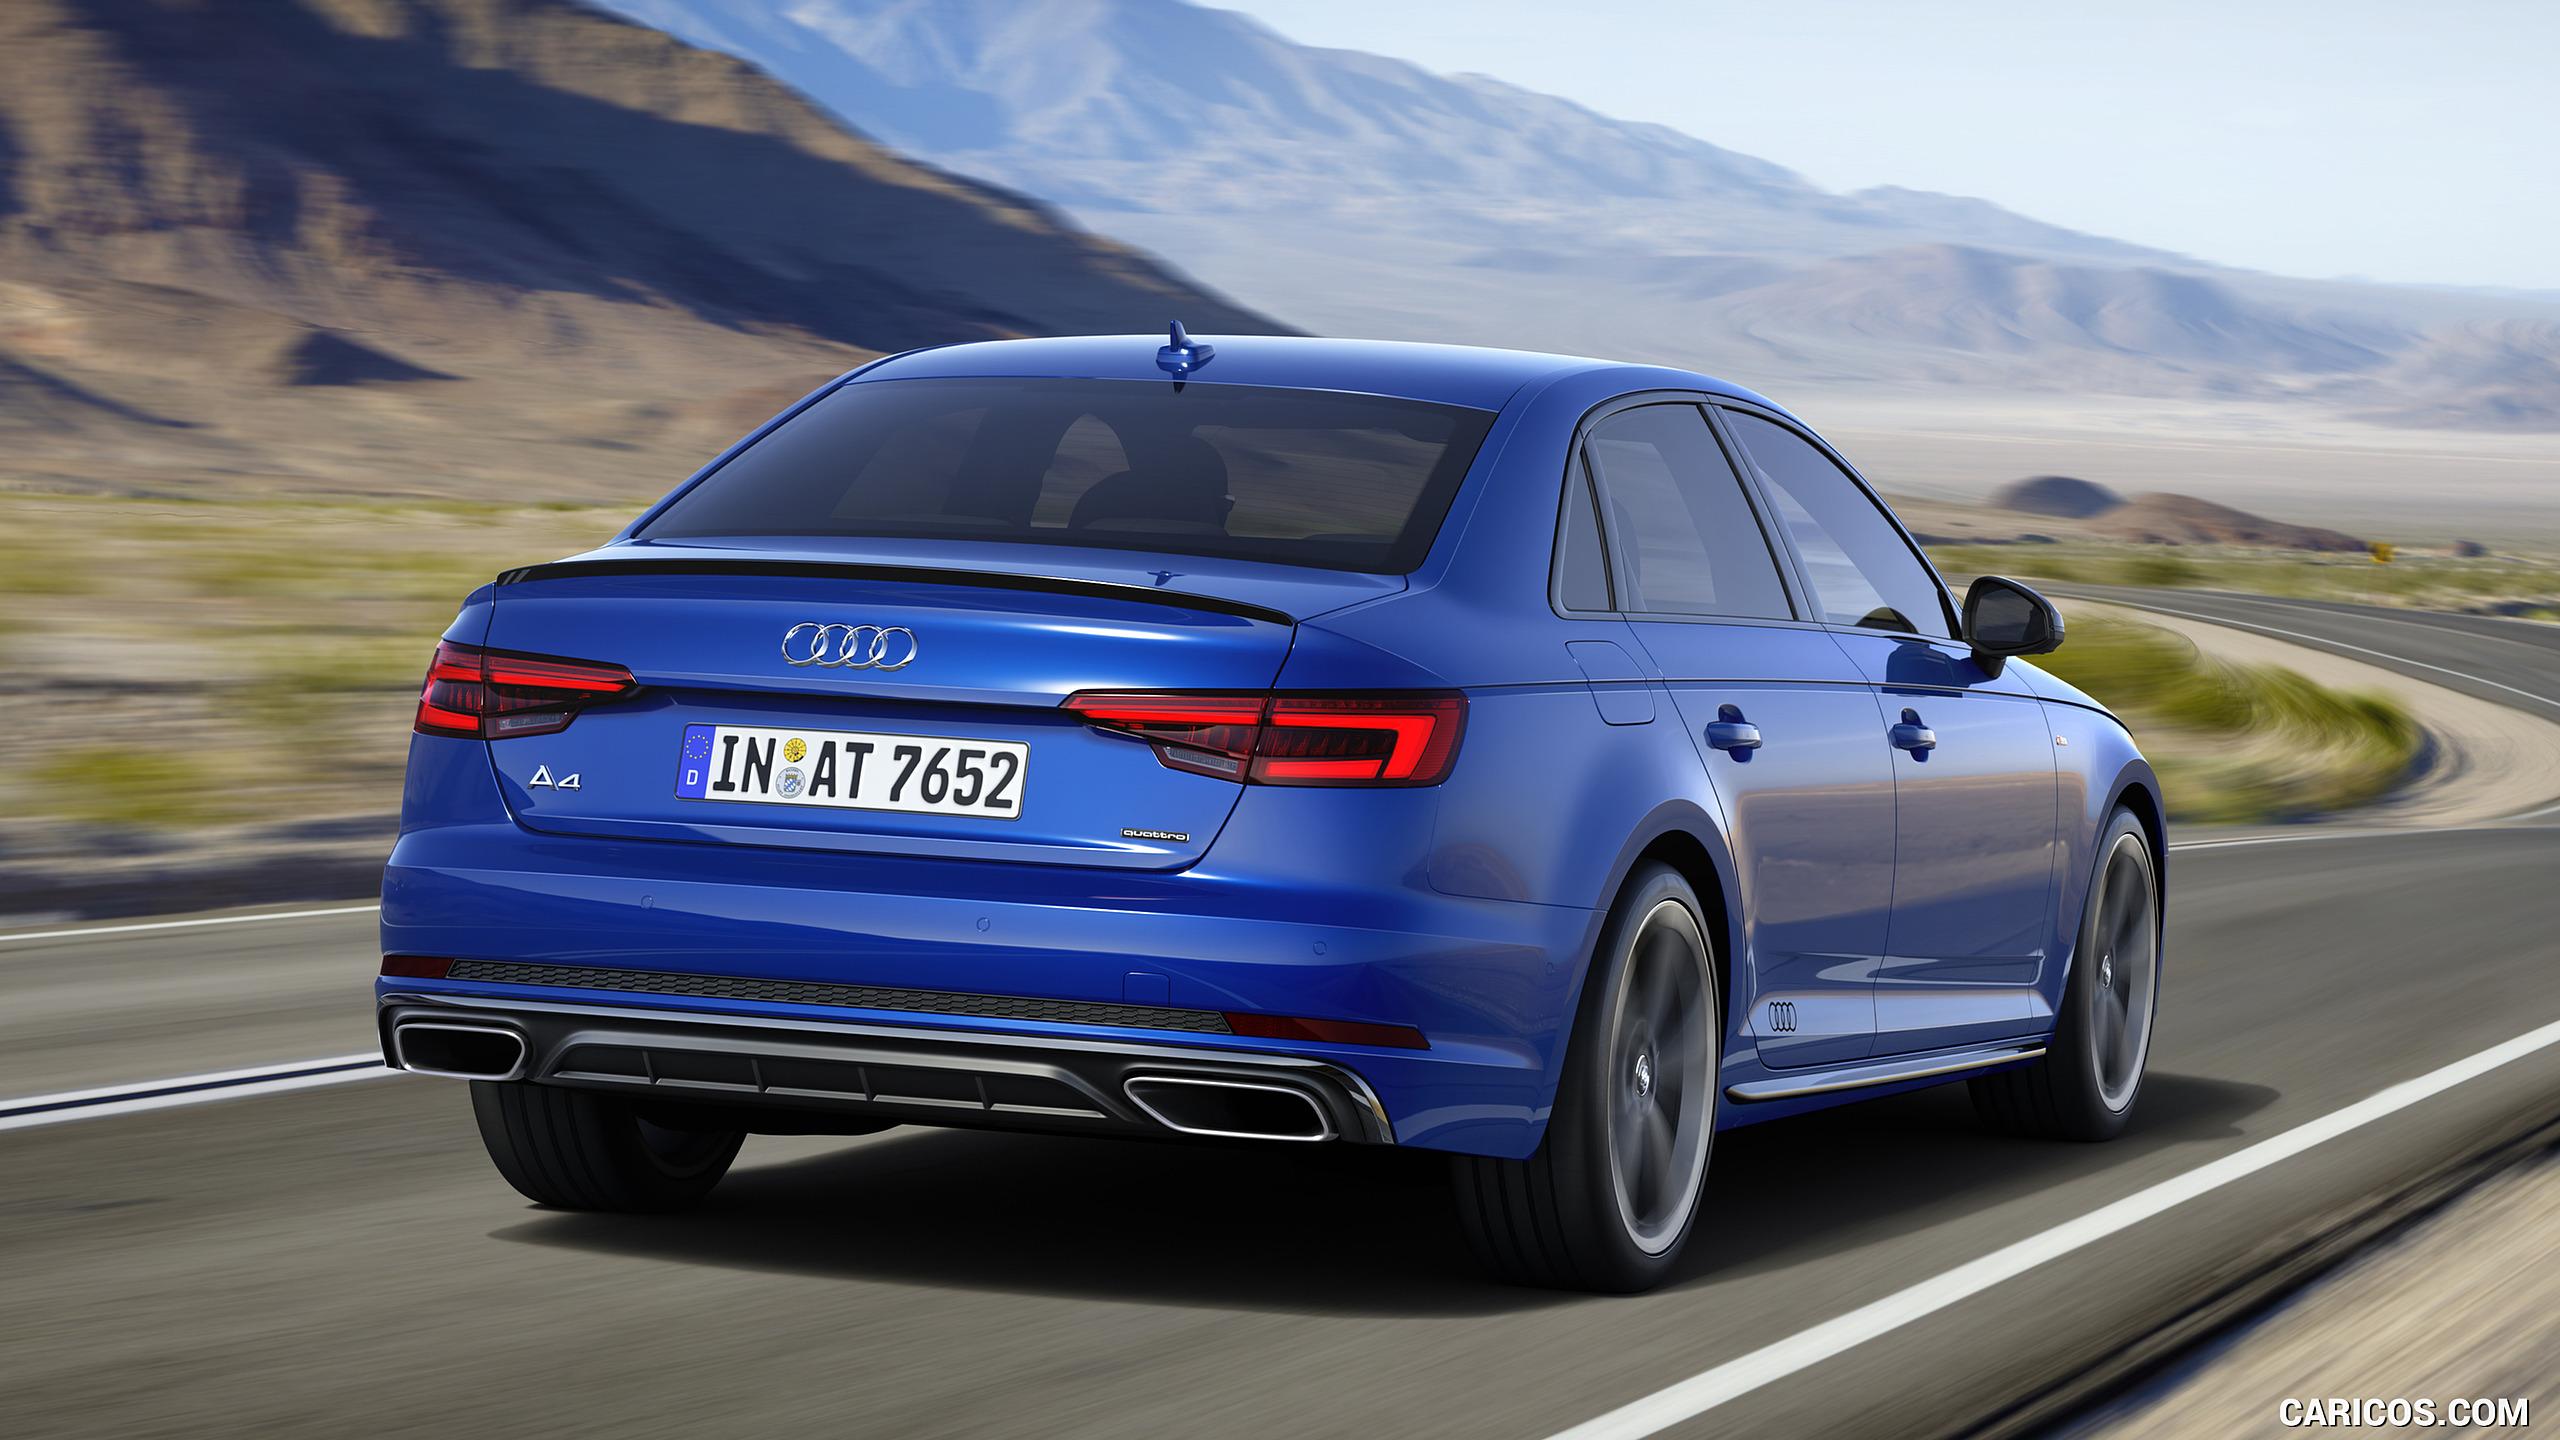 Audi A4 (Color: Ascari Blue). HD Wallpaper